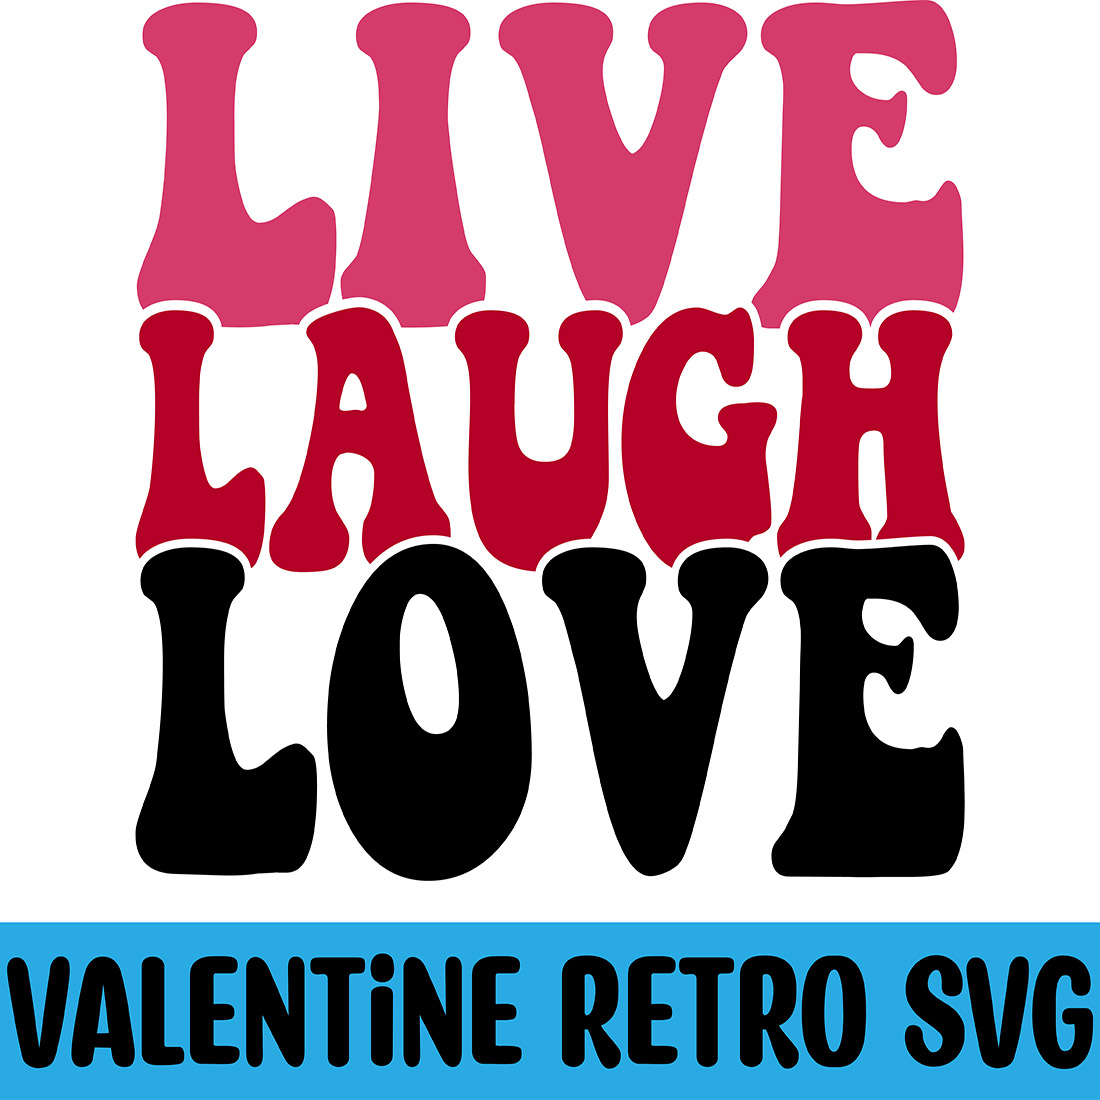 Live Laugh Love Retro SVG cover image.